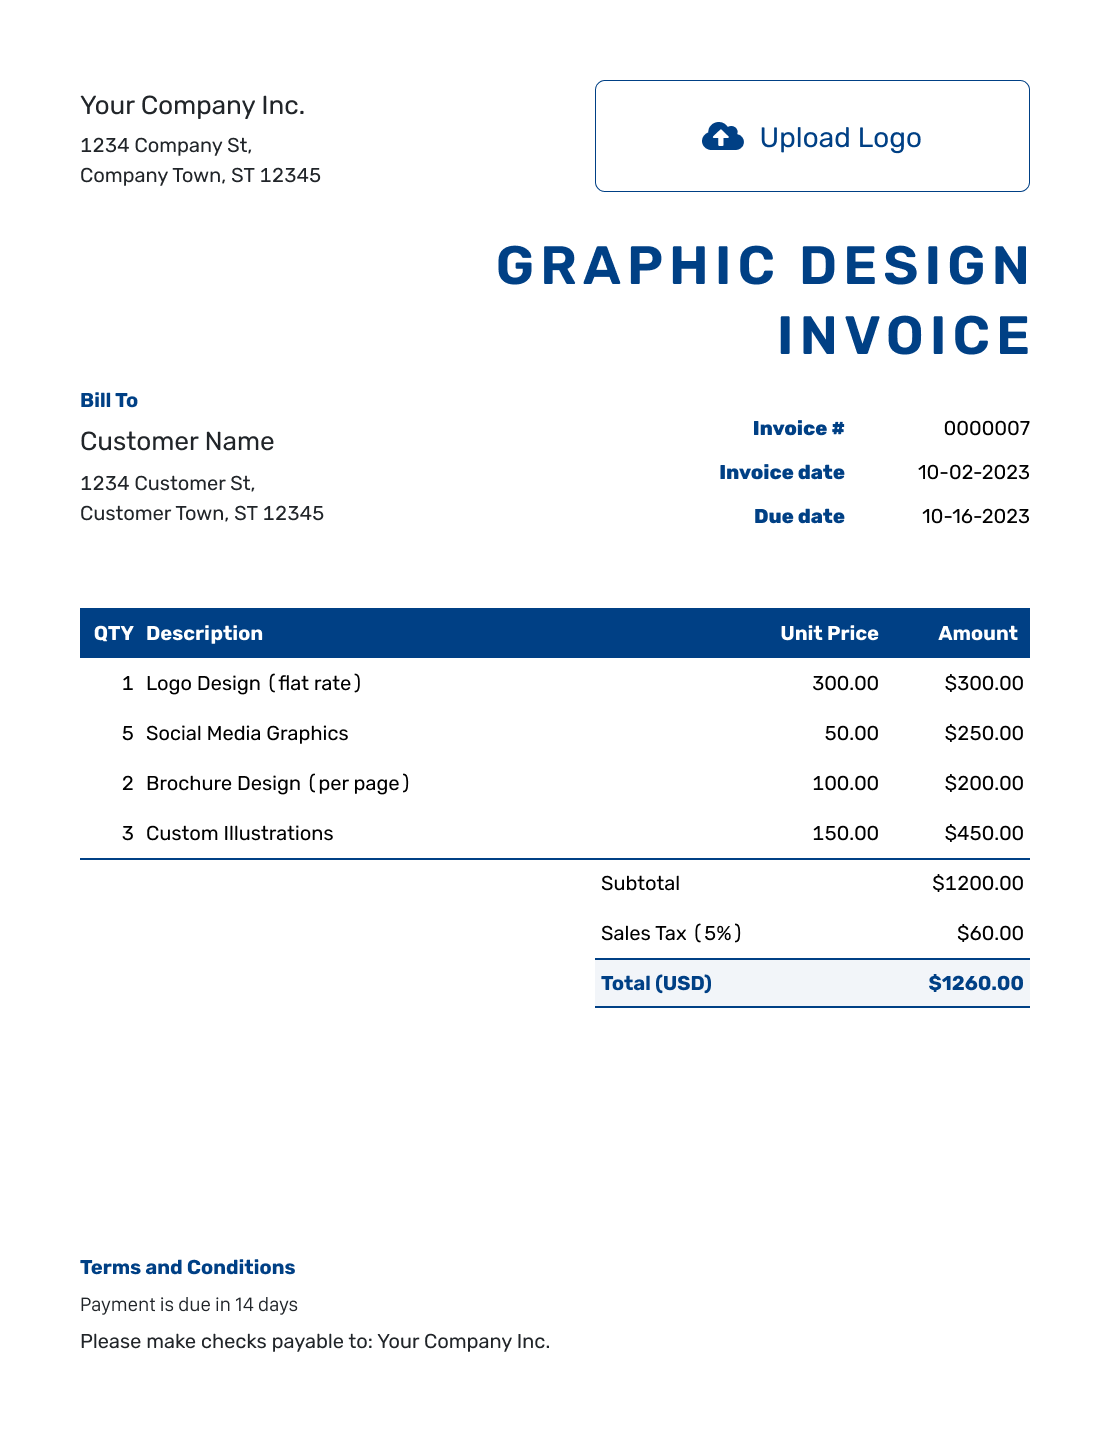 Sample Graphic Design Invoice Template